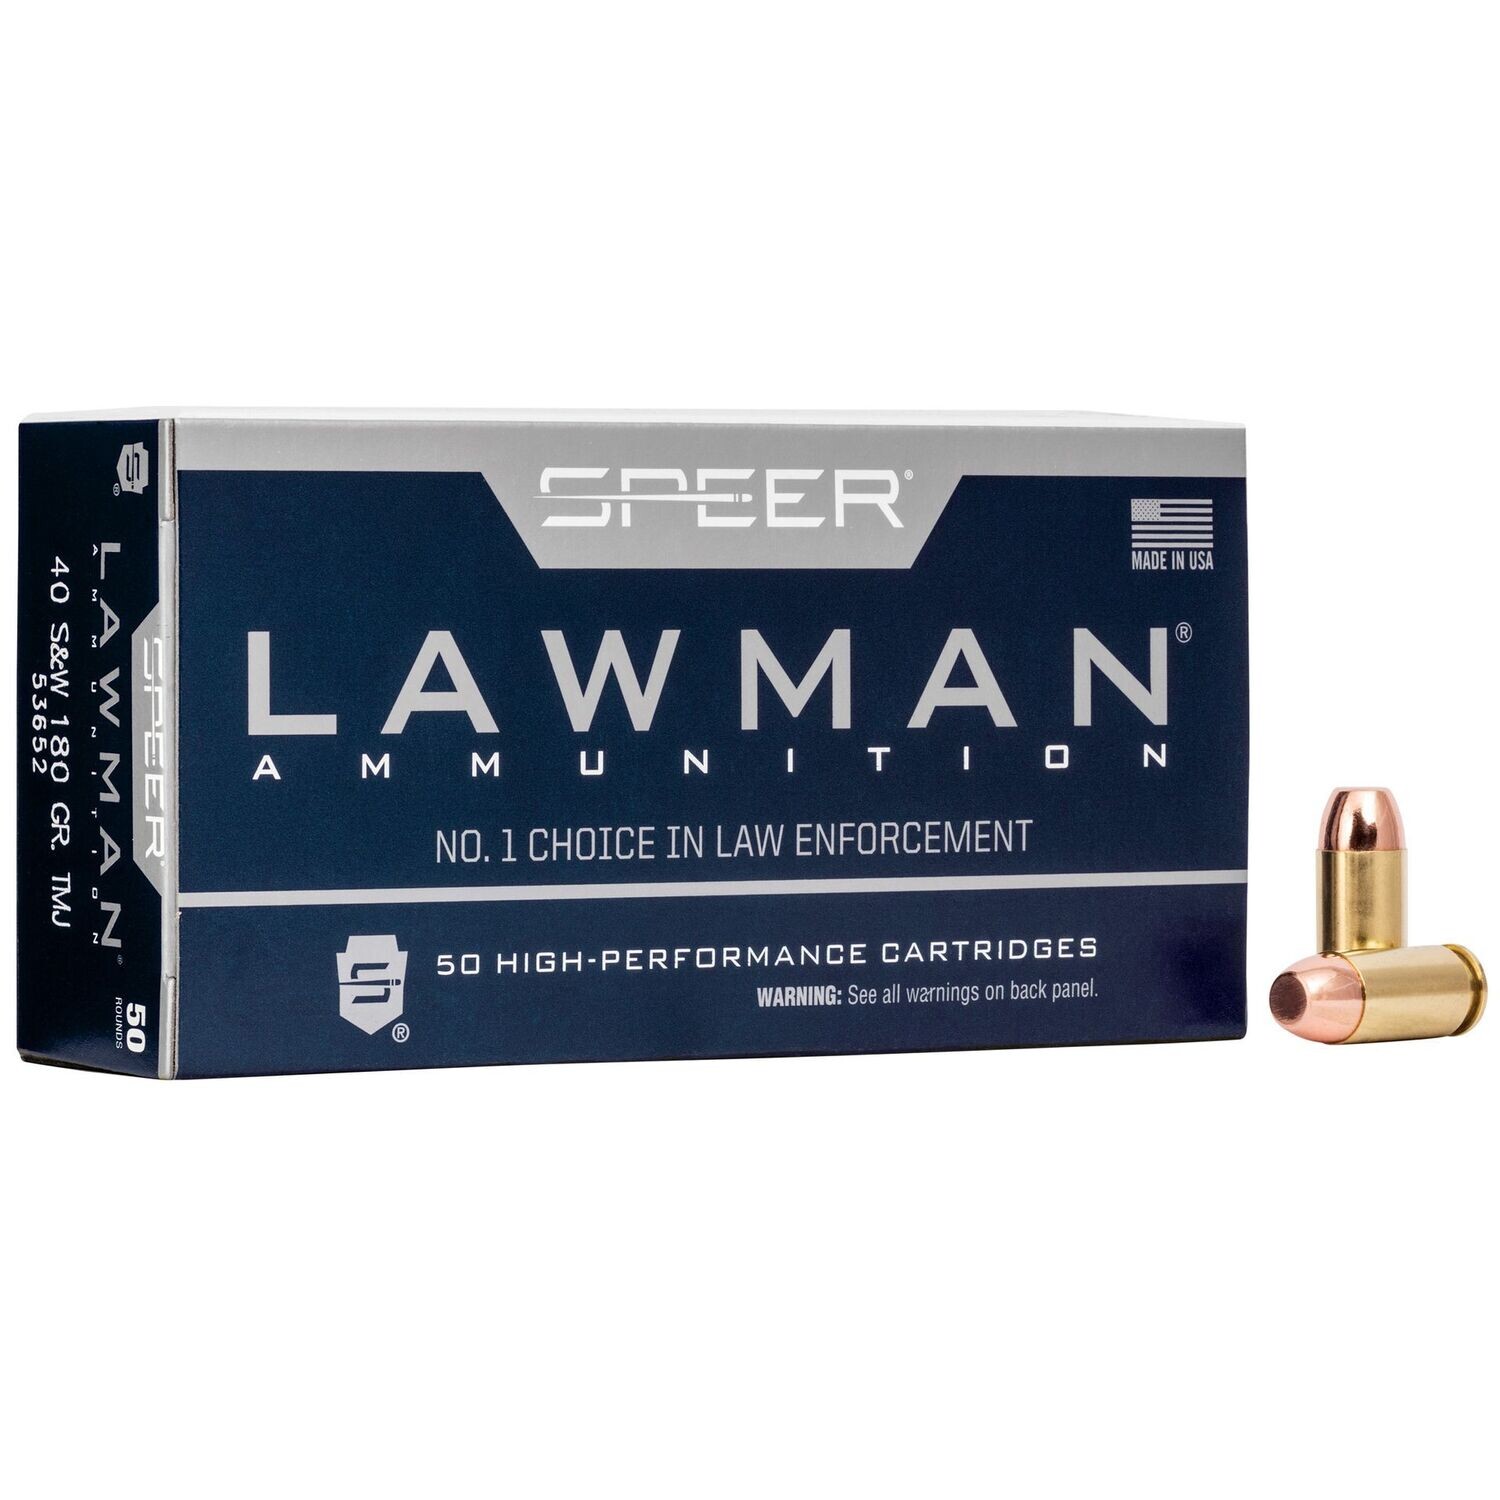 Speer Ammunition, Speer Lawman, Training, 40 S&W, 180 Grain, Total Metal Jacket, 50 Round Box